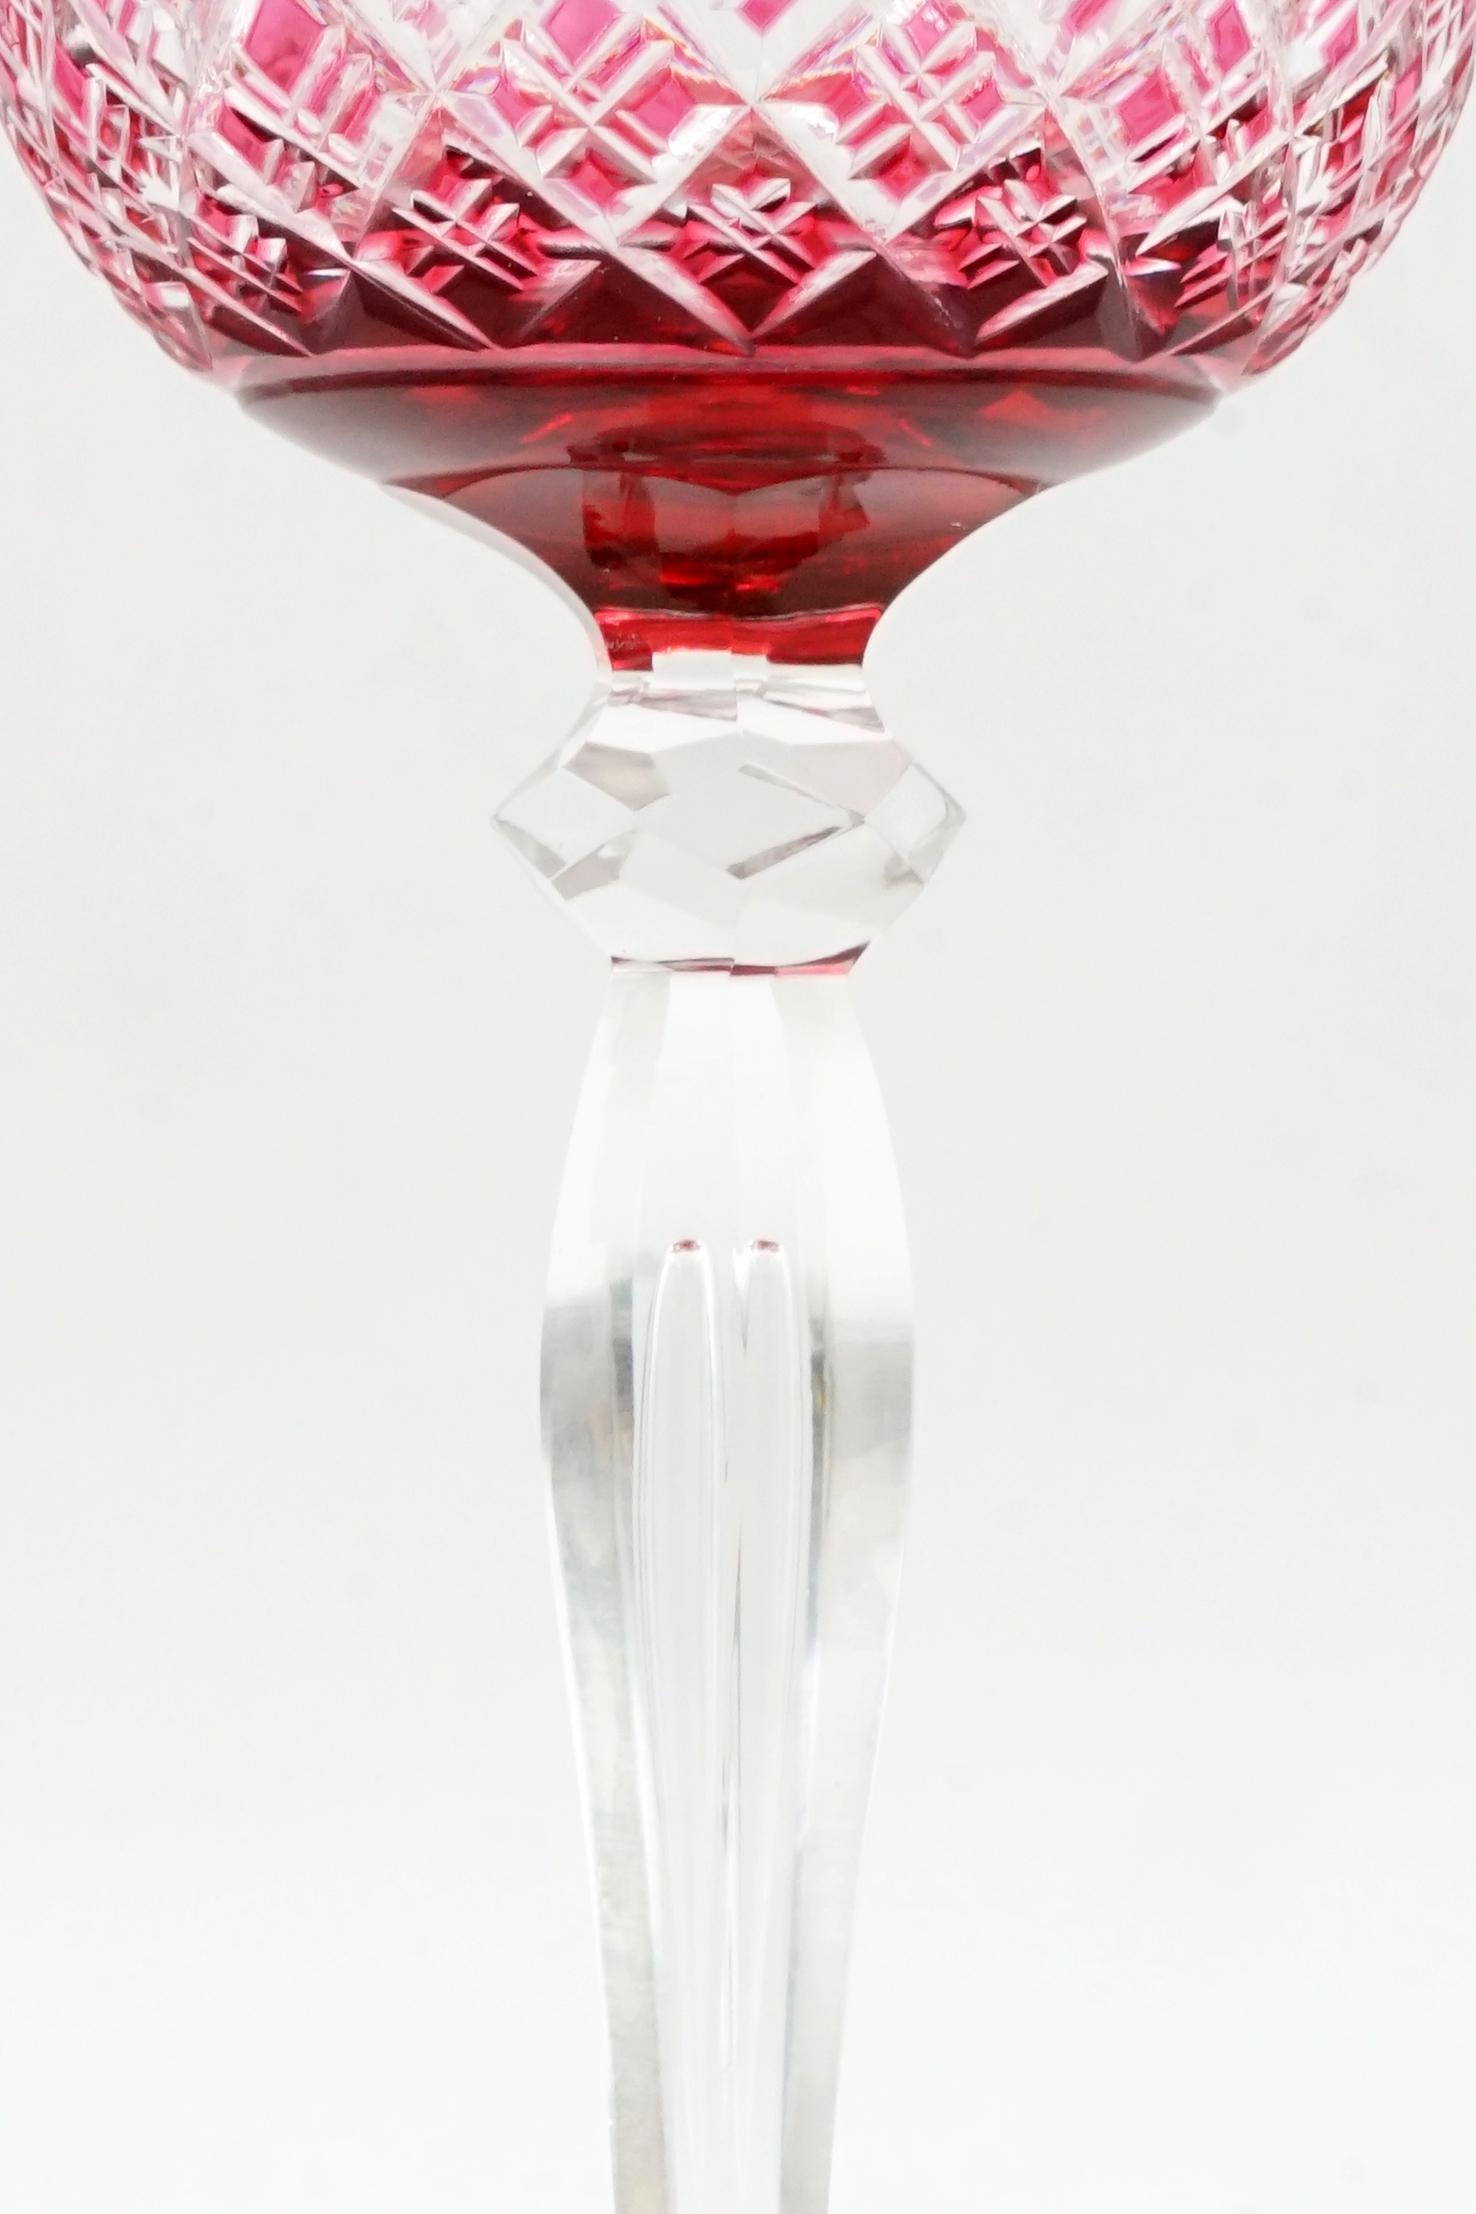 Ensemble de 12 verres à vin en cristal
Service de verres à vin attribué à Val Saint Lambert
Origine : Belgique Circa 1930
Excellent état
couleur rouge rubis
Verre soufflé et taillé à la main
Il s'agit d'un modèle rare, avec une bulle soufflée sur